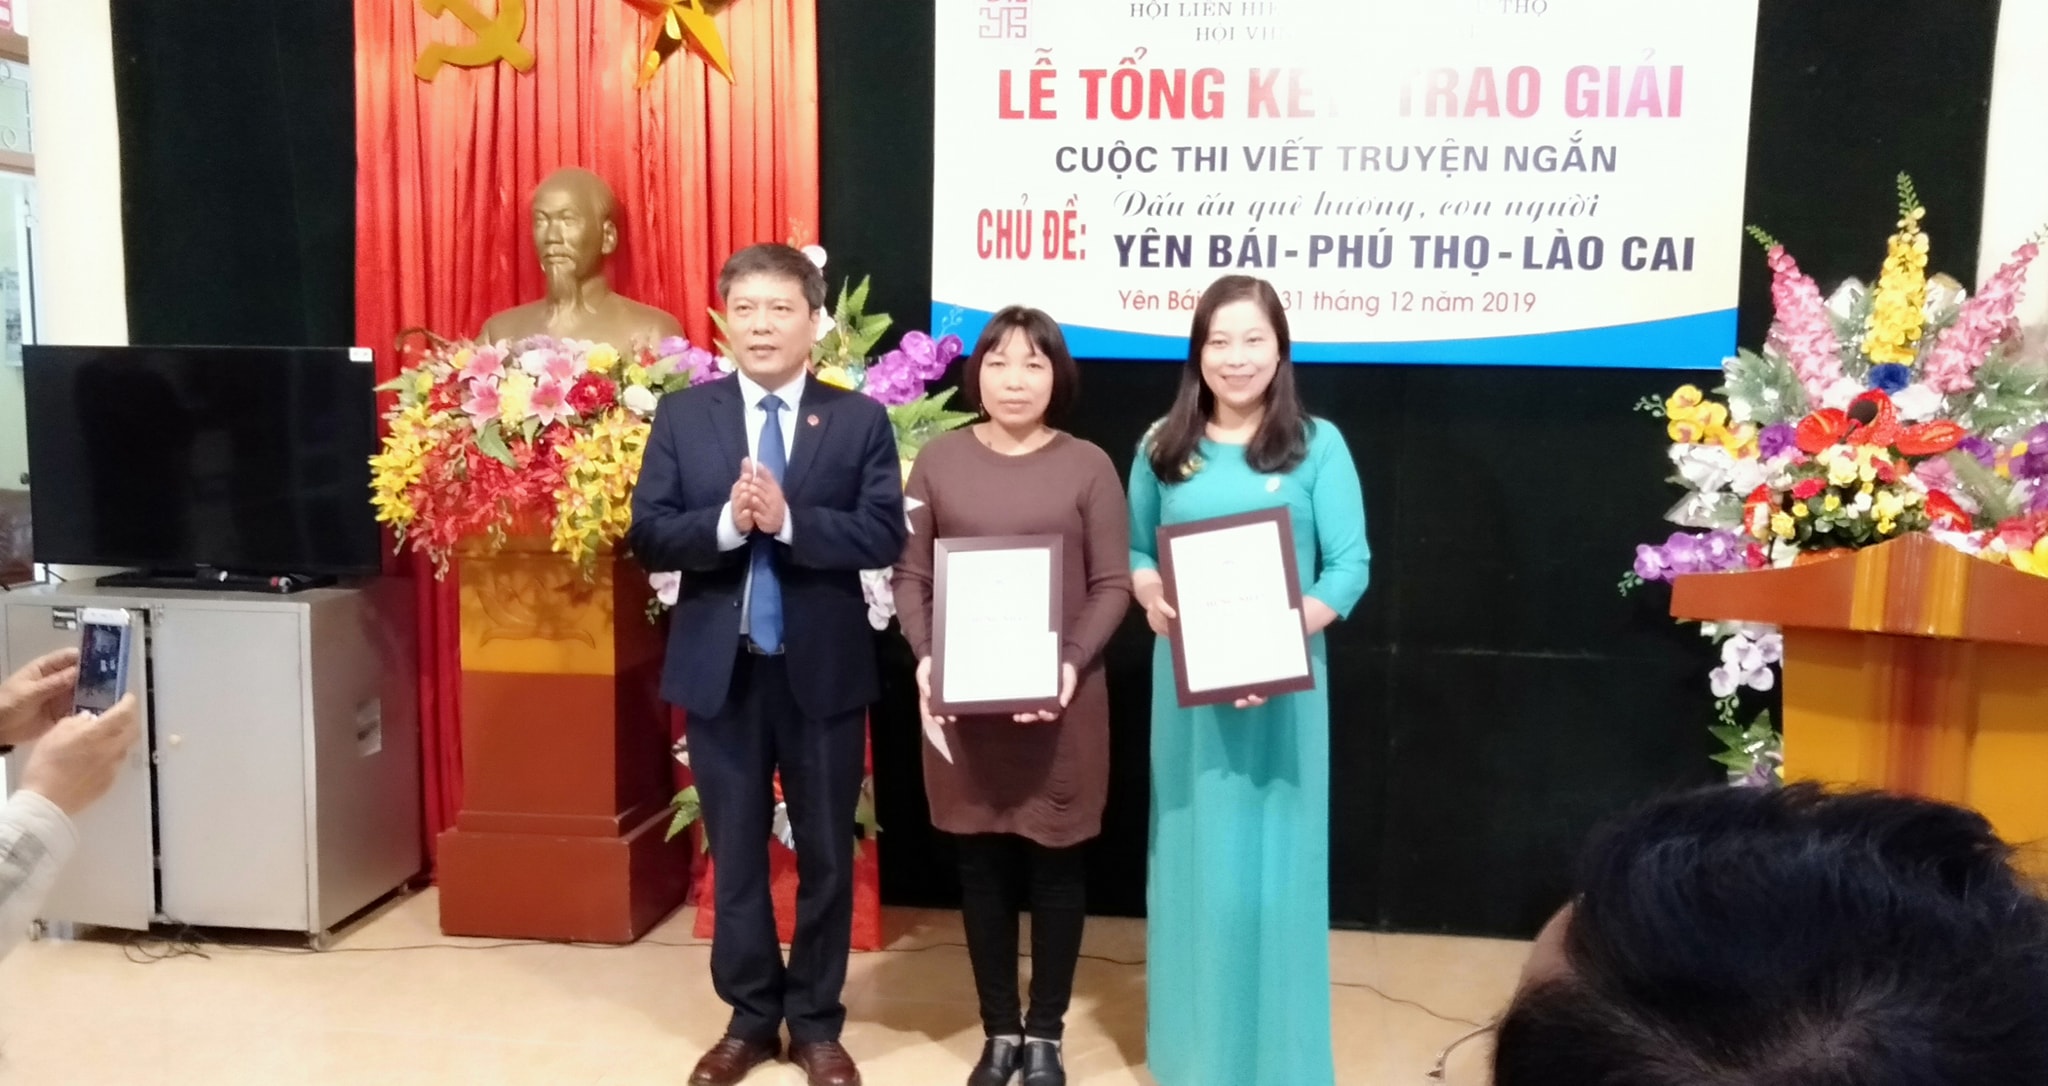 Tác giả Hoàng Kim Yến (bìa phải) nhận giải tại cuộc thi truyện ngắn ba tỉnh Yên Bái - Phú Thọ - Lào Cai năm 2019.